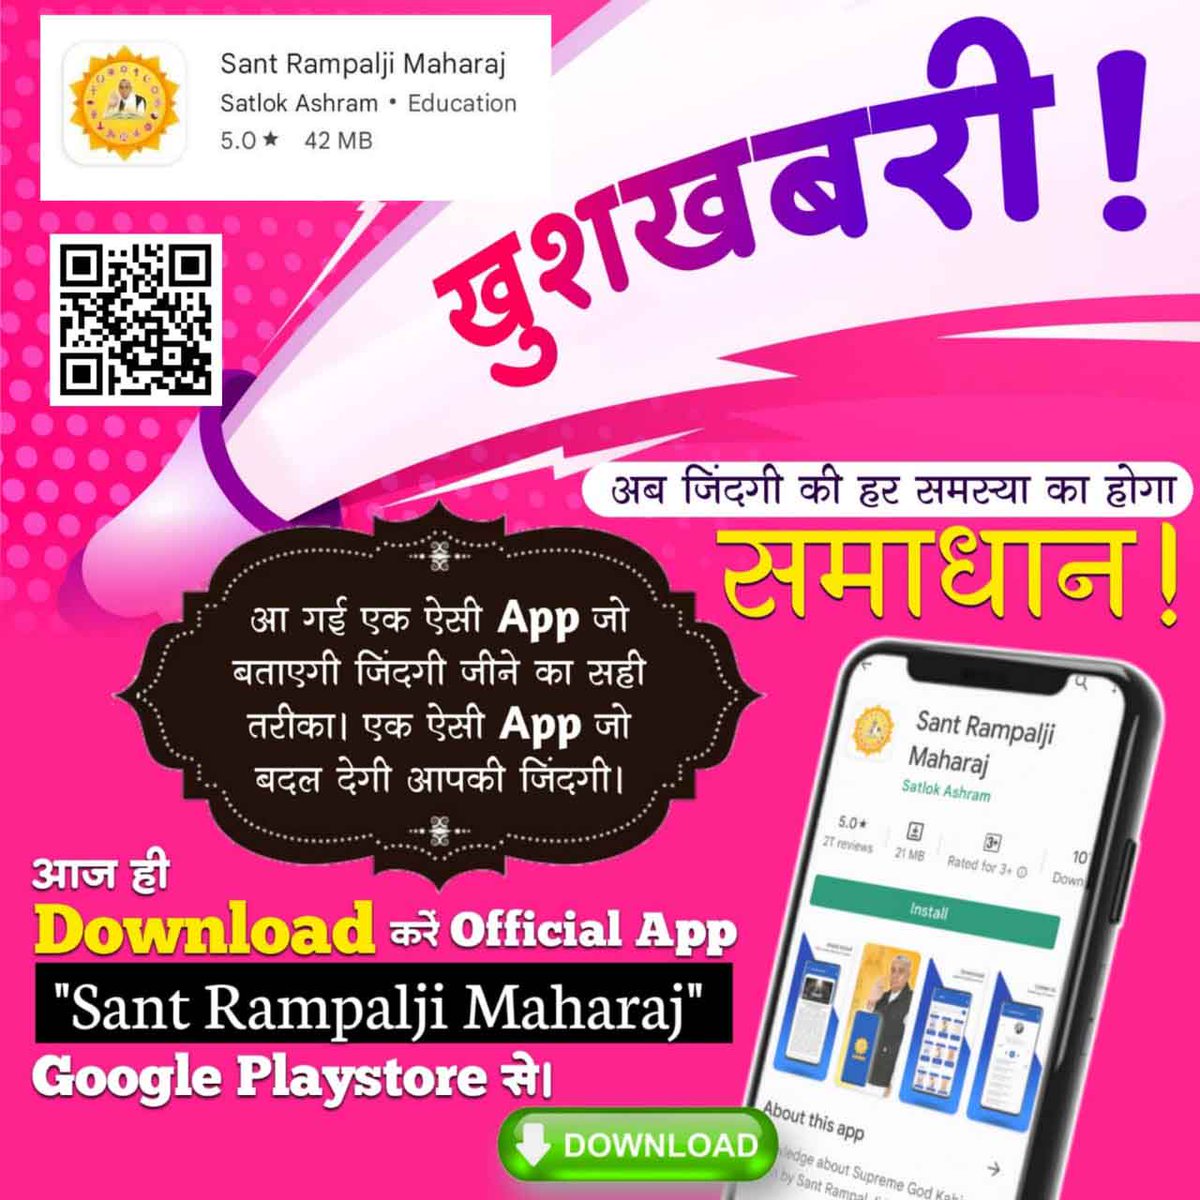 #Sant_Rampalji_Maharaj_App
#availableonplaystore
अब जिंदगी की हर समस्या का होगा समाधान!  'Sant Rampalji Maharaj' App Download करें Playstore से।